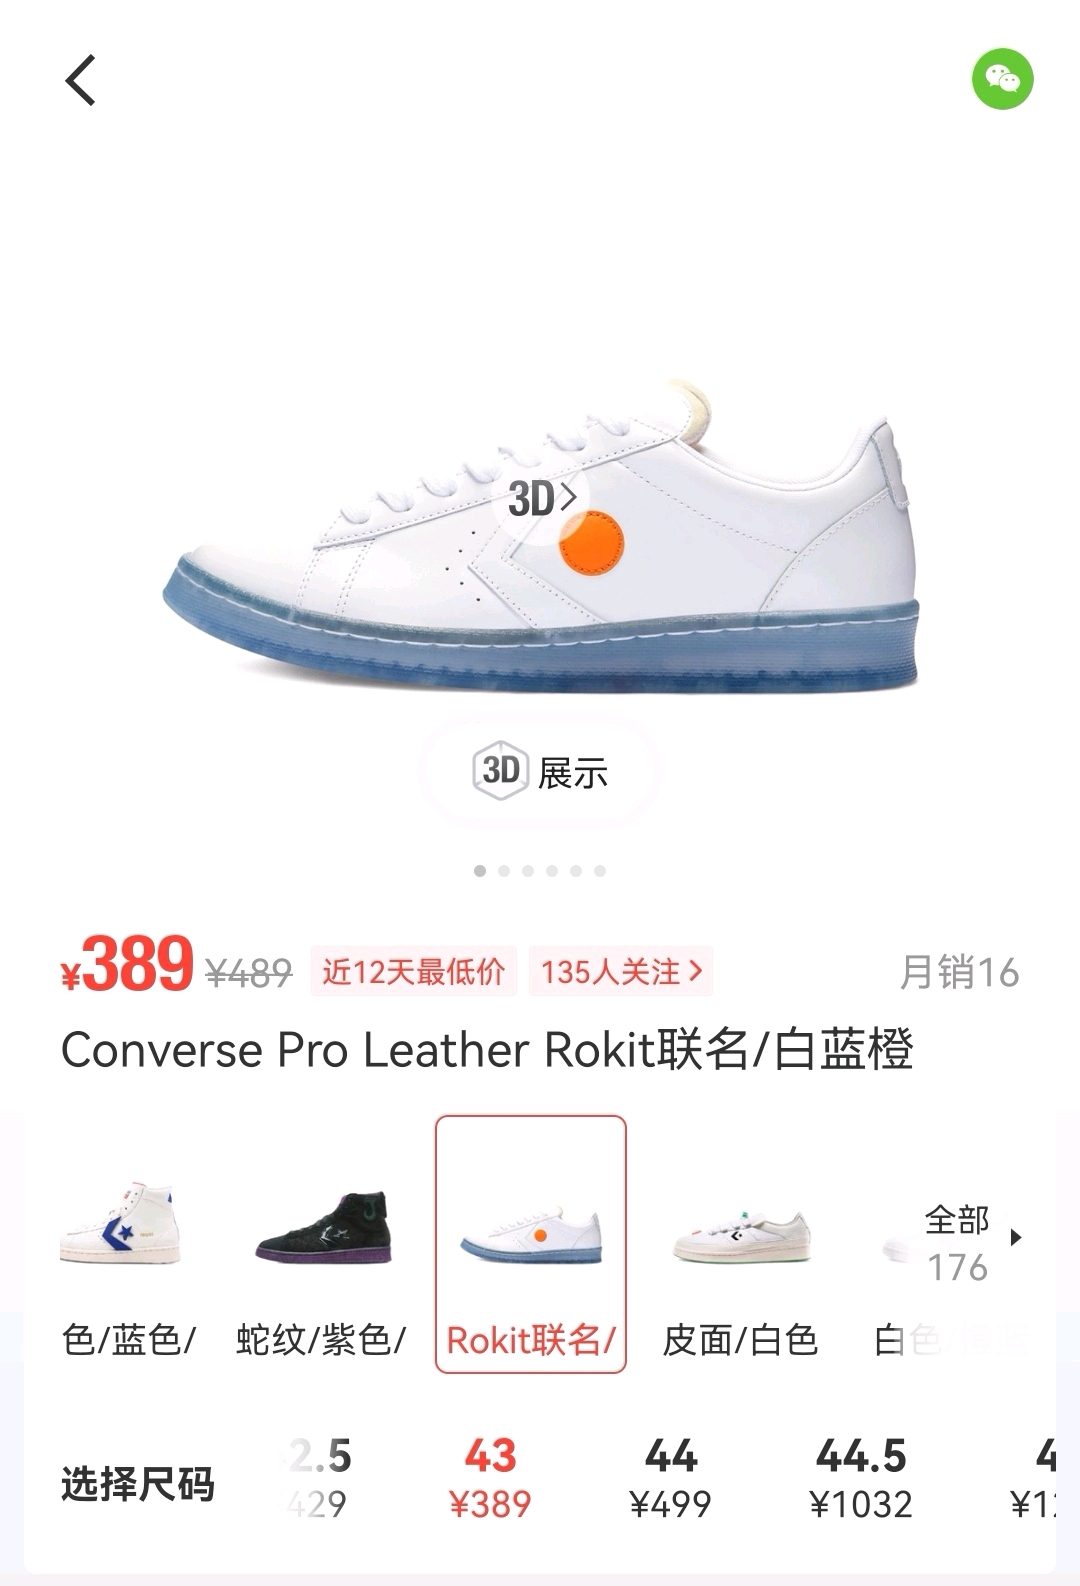 哪里买球鞋正品又便宜_在韩国买奢饰品便宜还是香港买便宜_怎么买便宜又正品的护肤品